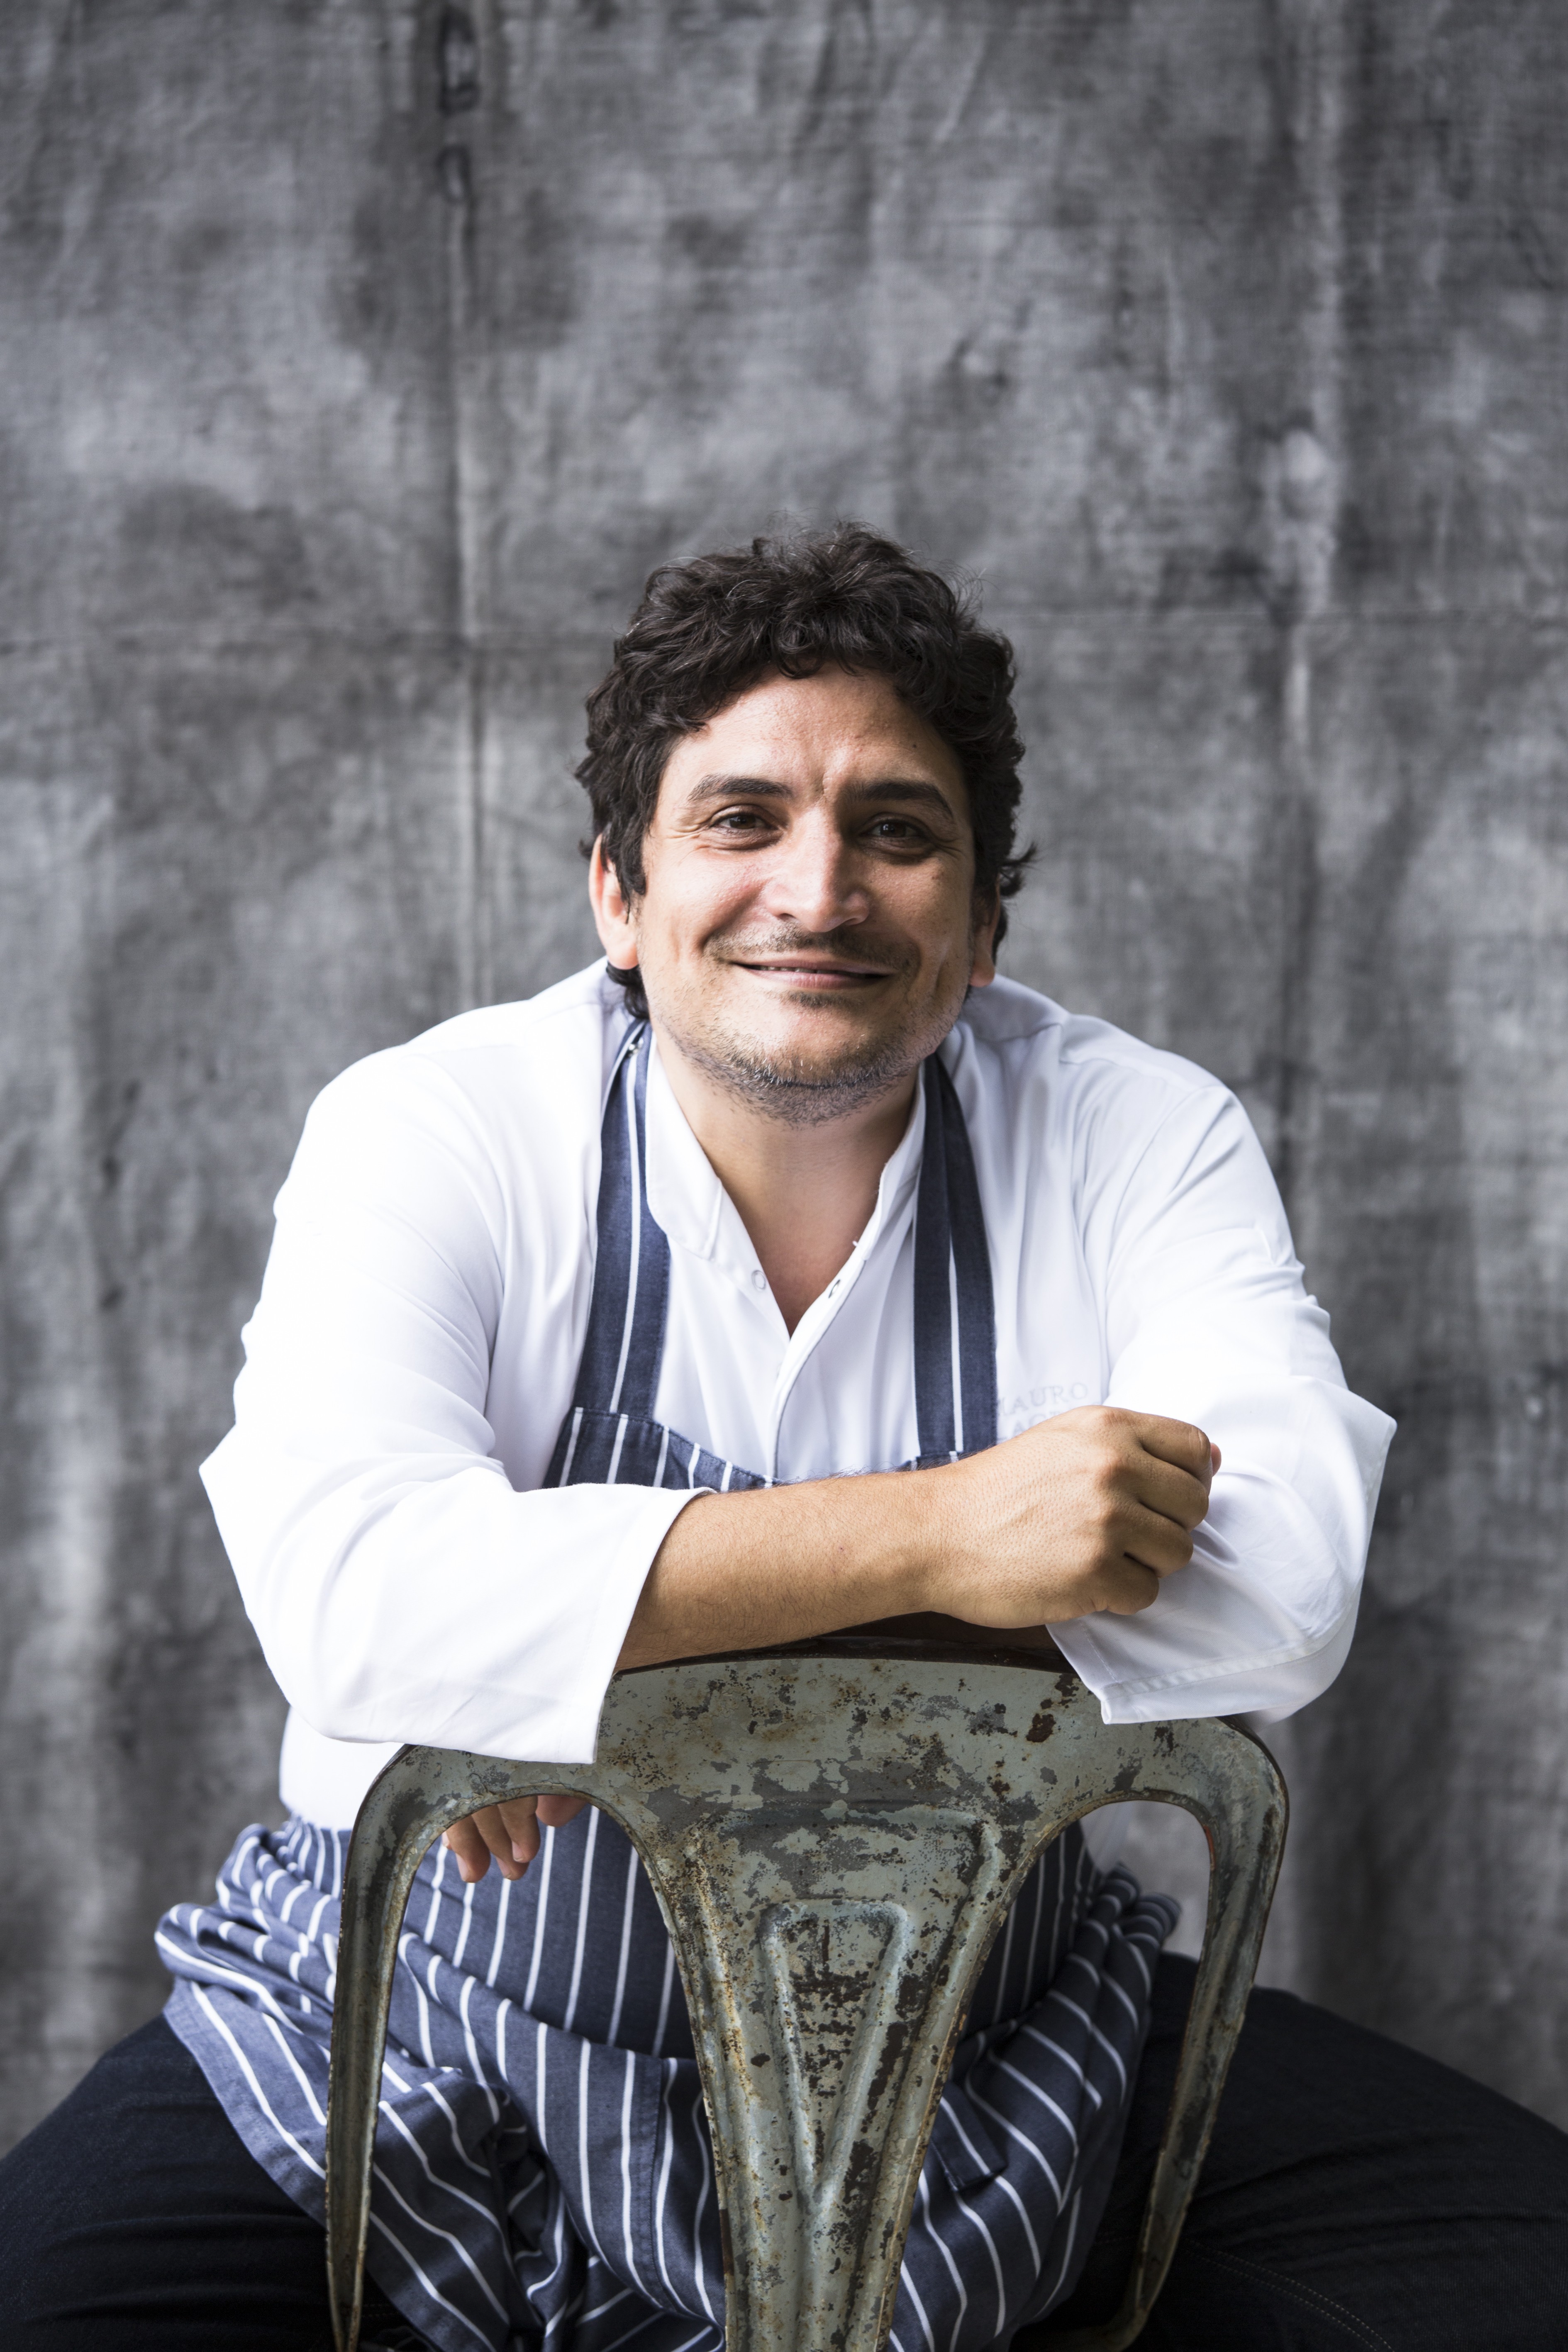 Mauro Colagreco, chef do Mirazur - o melhor restaurante do mundo em 2019 (Foto: Matteo Carassale/Divulgação)